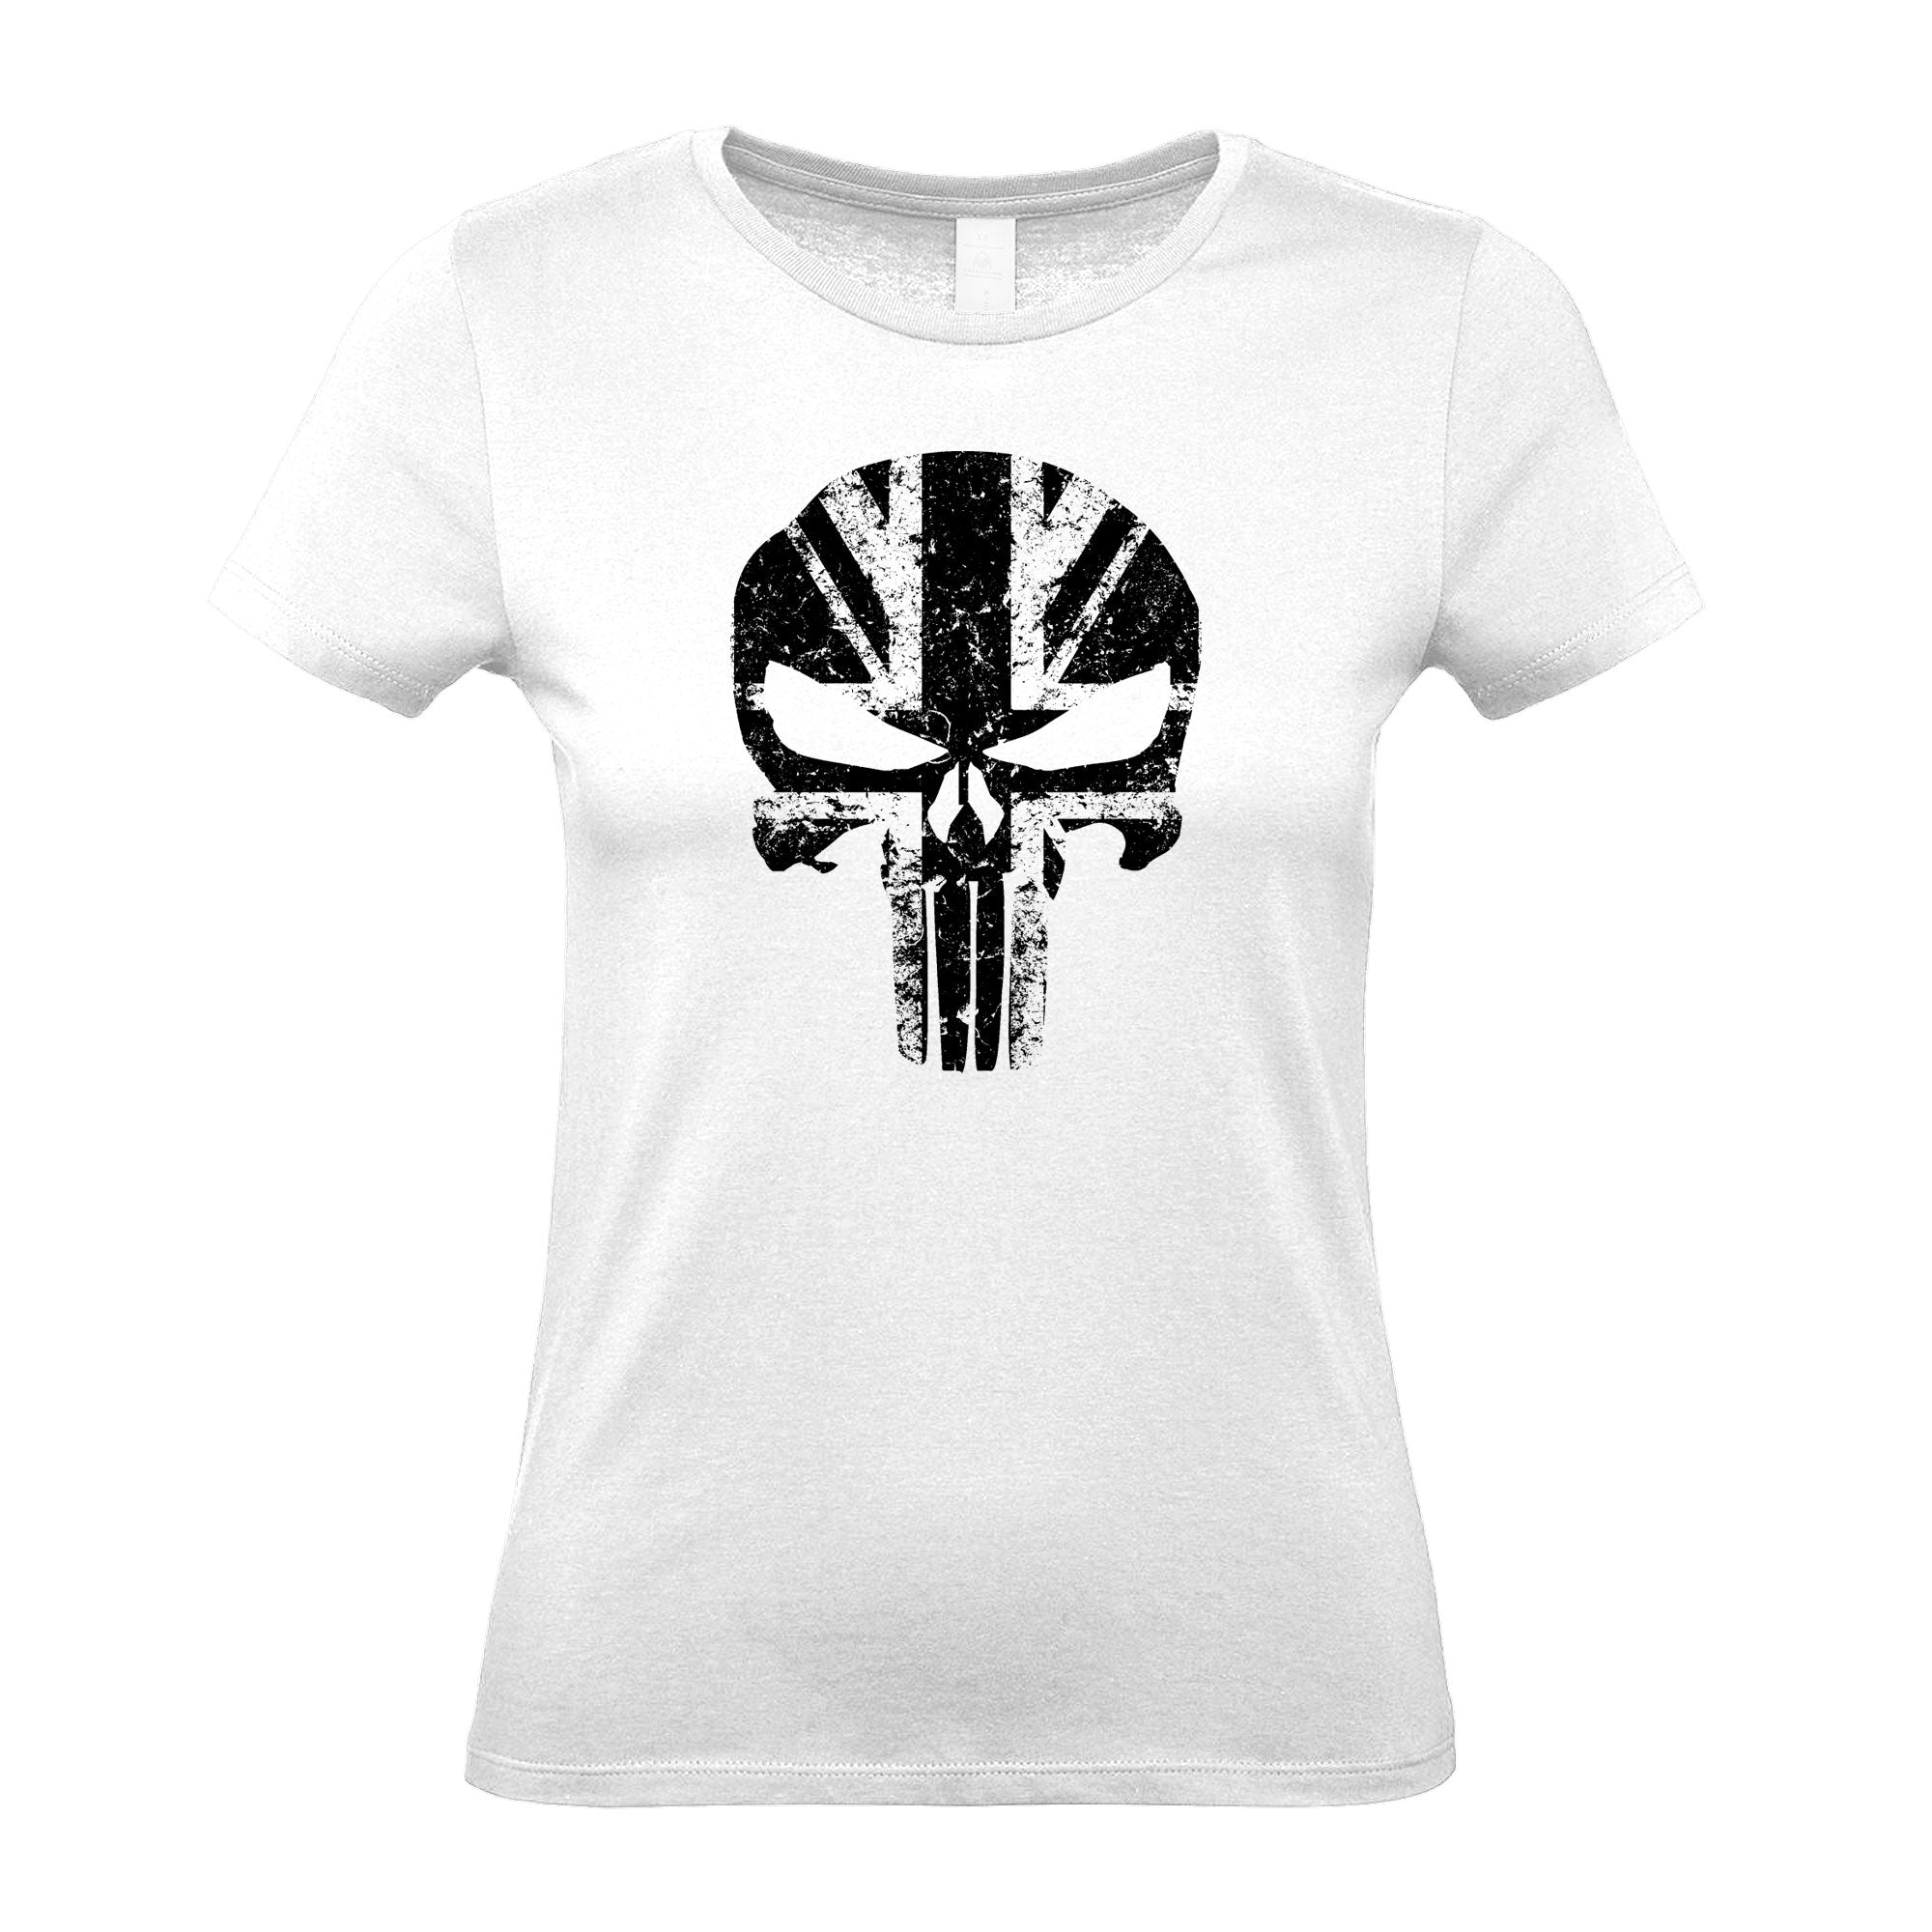 Skull UK - Women's Gym T-Shirt